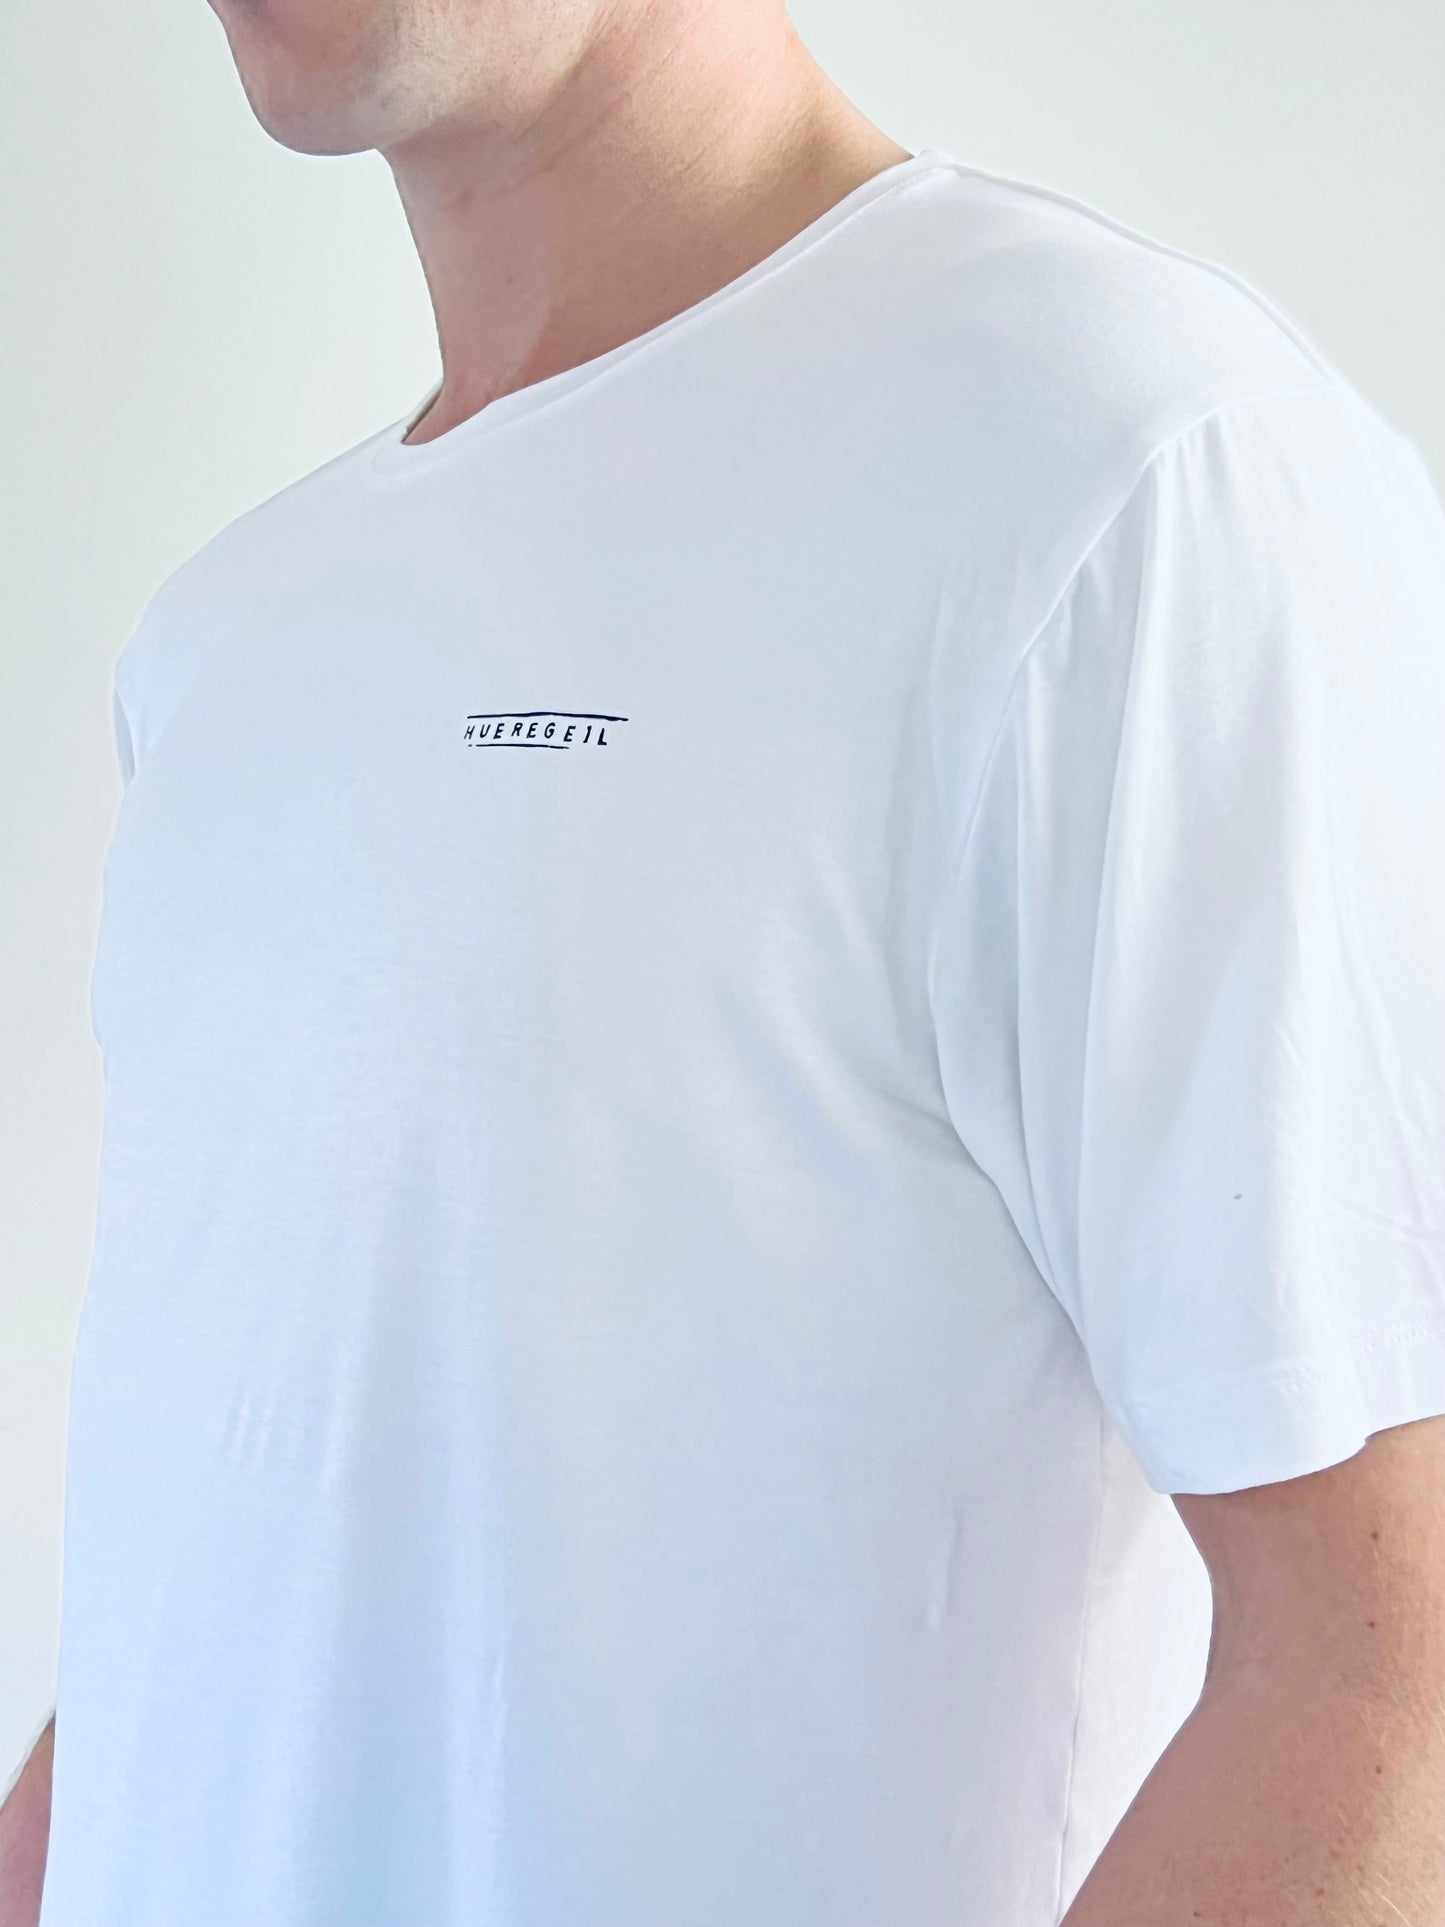 T-Shirt white w/ mini print